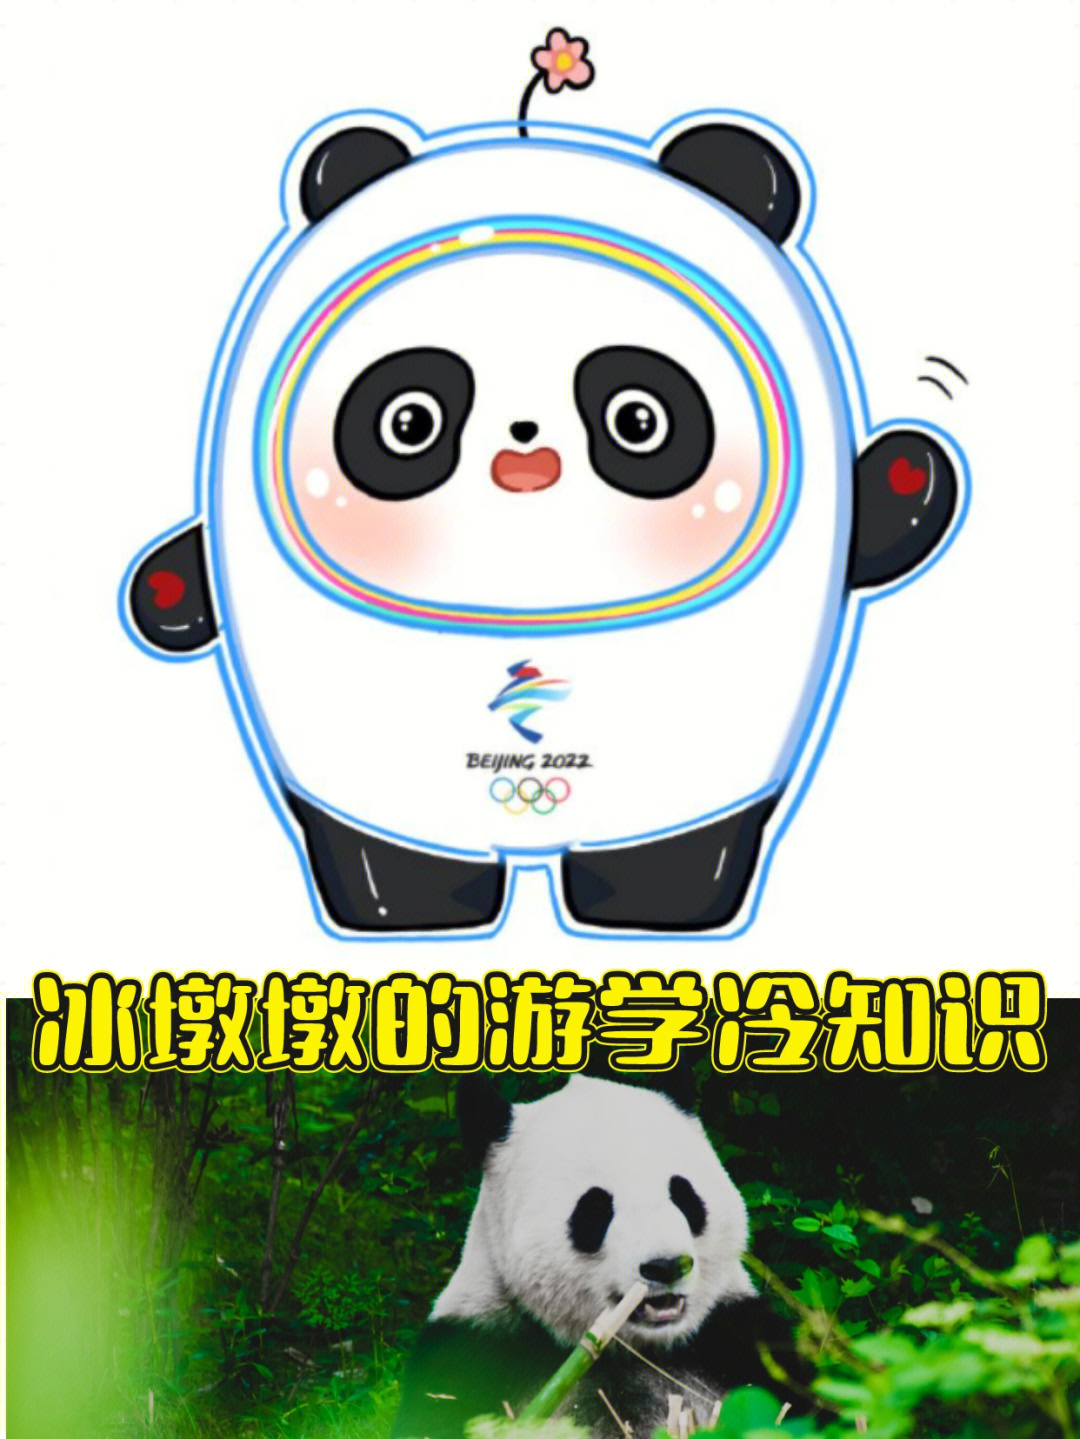 奥运熊猫晶晶图片